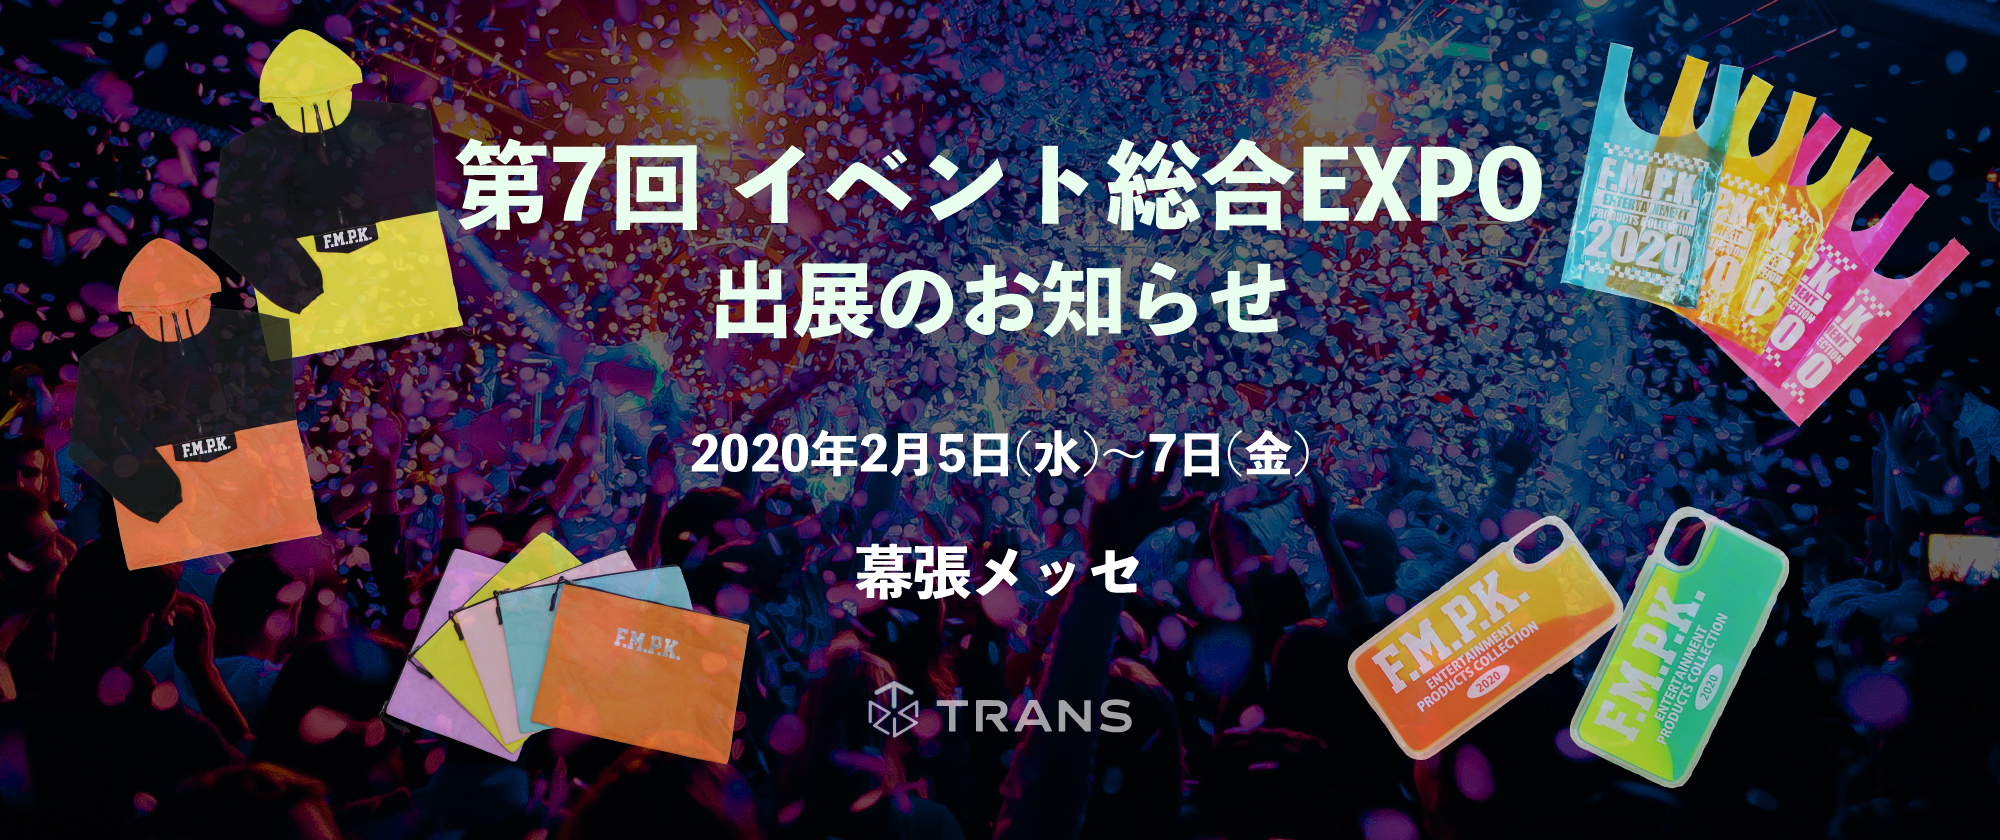 第7回 イベント総合EXPO 出展のお知らせ